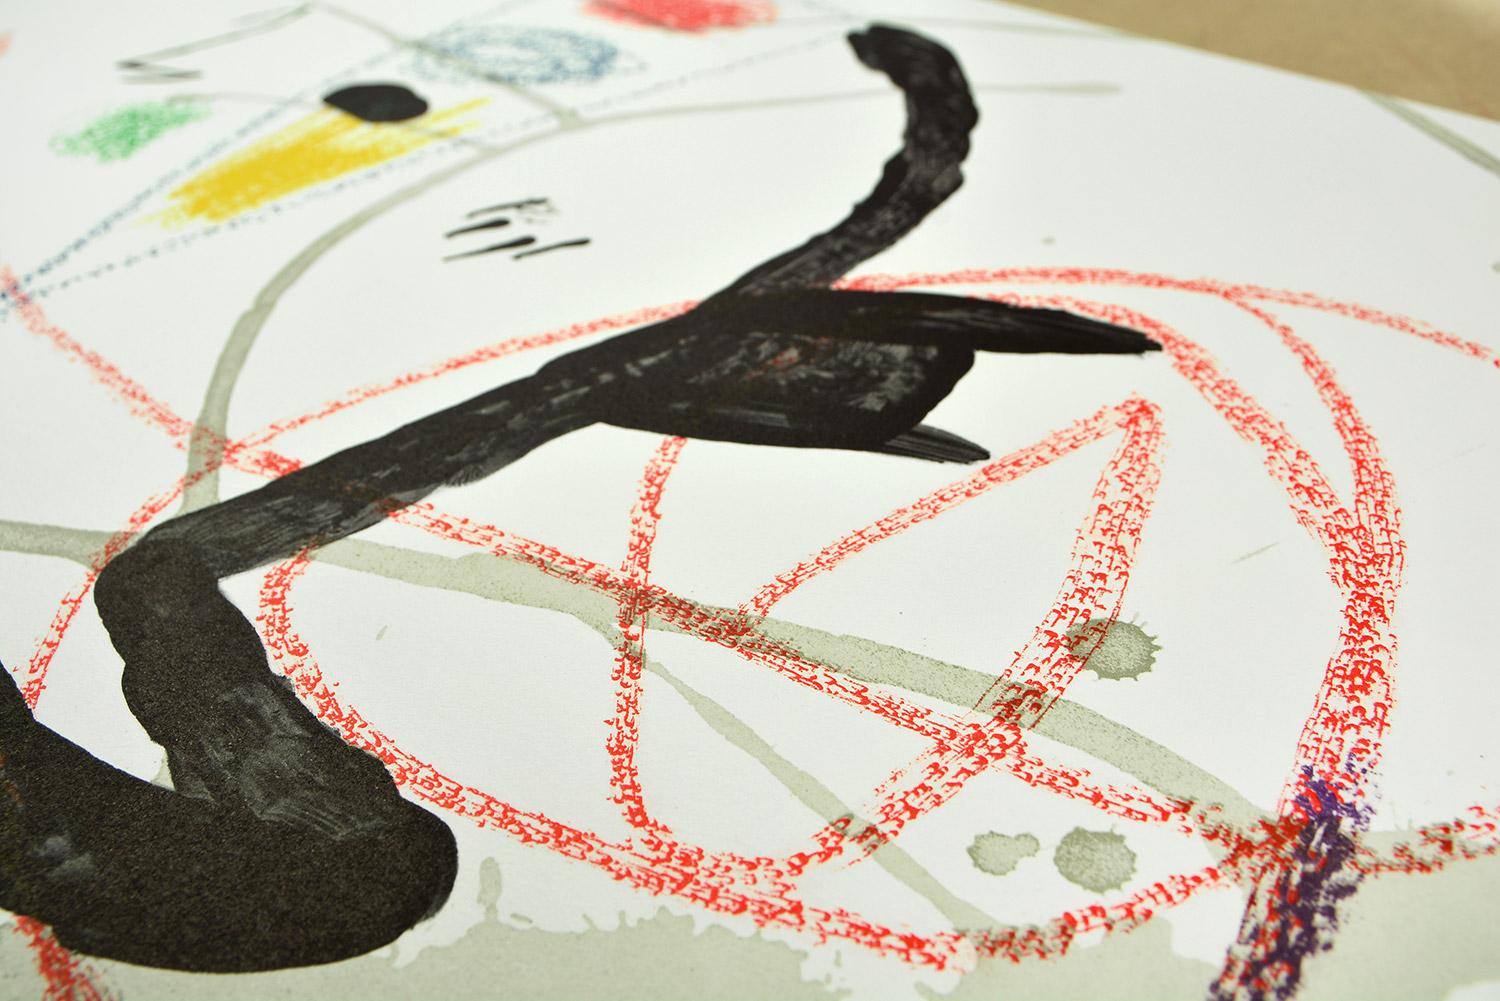 Maravillas con variaciones acrósticas en el jardín de Miró XI
Date of creation: 1975
Medium: Lithograph on Gvarro paper
Edition: 1500
Size: 49,5 x 71 cm
Observations: Lithograph on Gvarro paper plate signed. Edited by Polígrafa, Barcelona, in 1975.